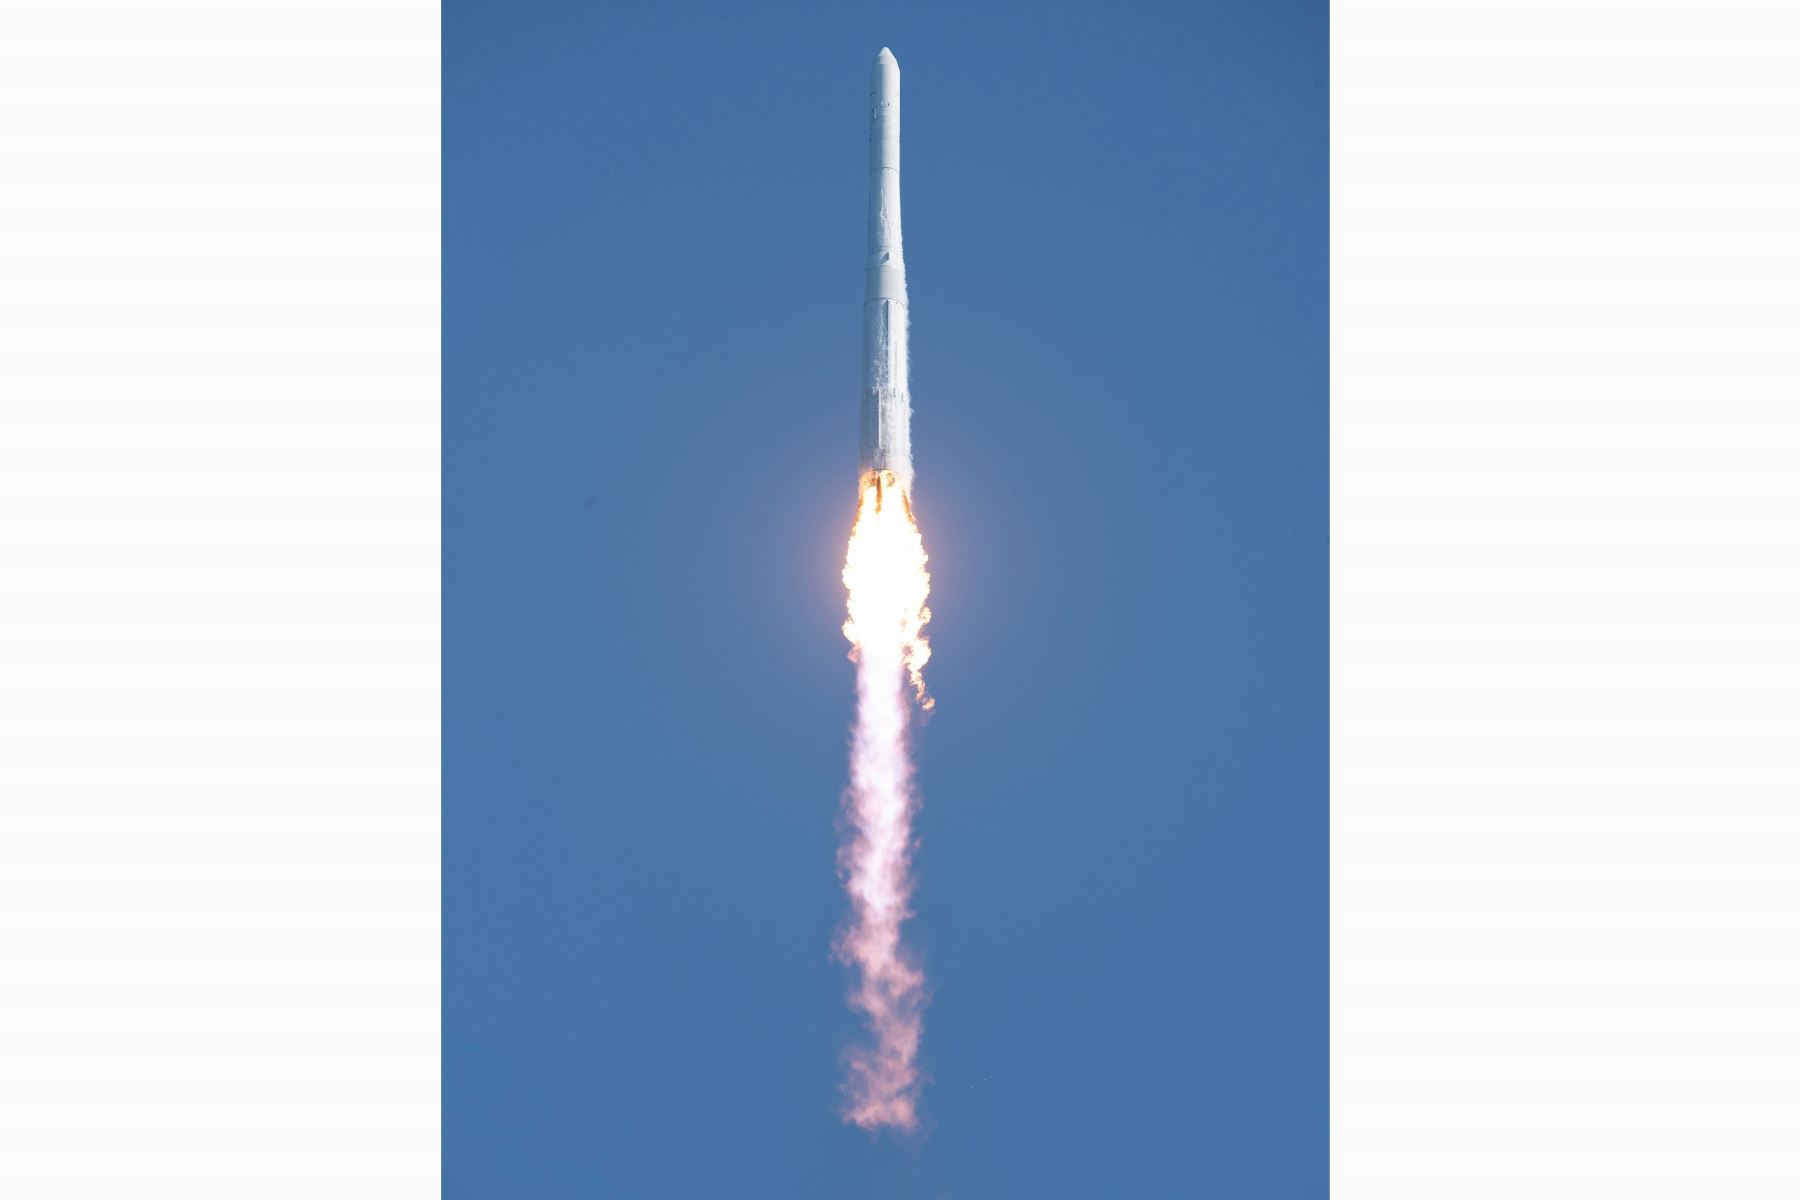 El cohete se lanzó desde el Centro Espacial Naro, a unos 350 kilómetros al sur de Seúl. Tras desprenderse con éxito de su primera y segunda fases y el carenado, su tercera fase logró desplegar la carga útil en la baja órbita terrestre, a unos 700 kilómetros de altura, unos 16 minutos después de despegar. Foto: AFP